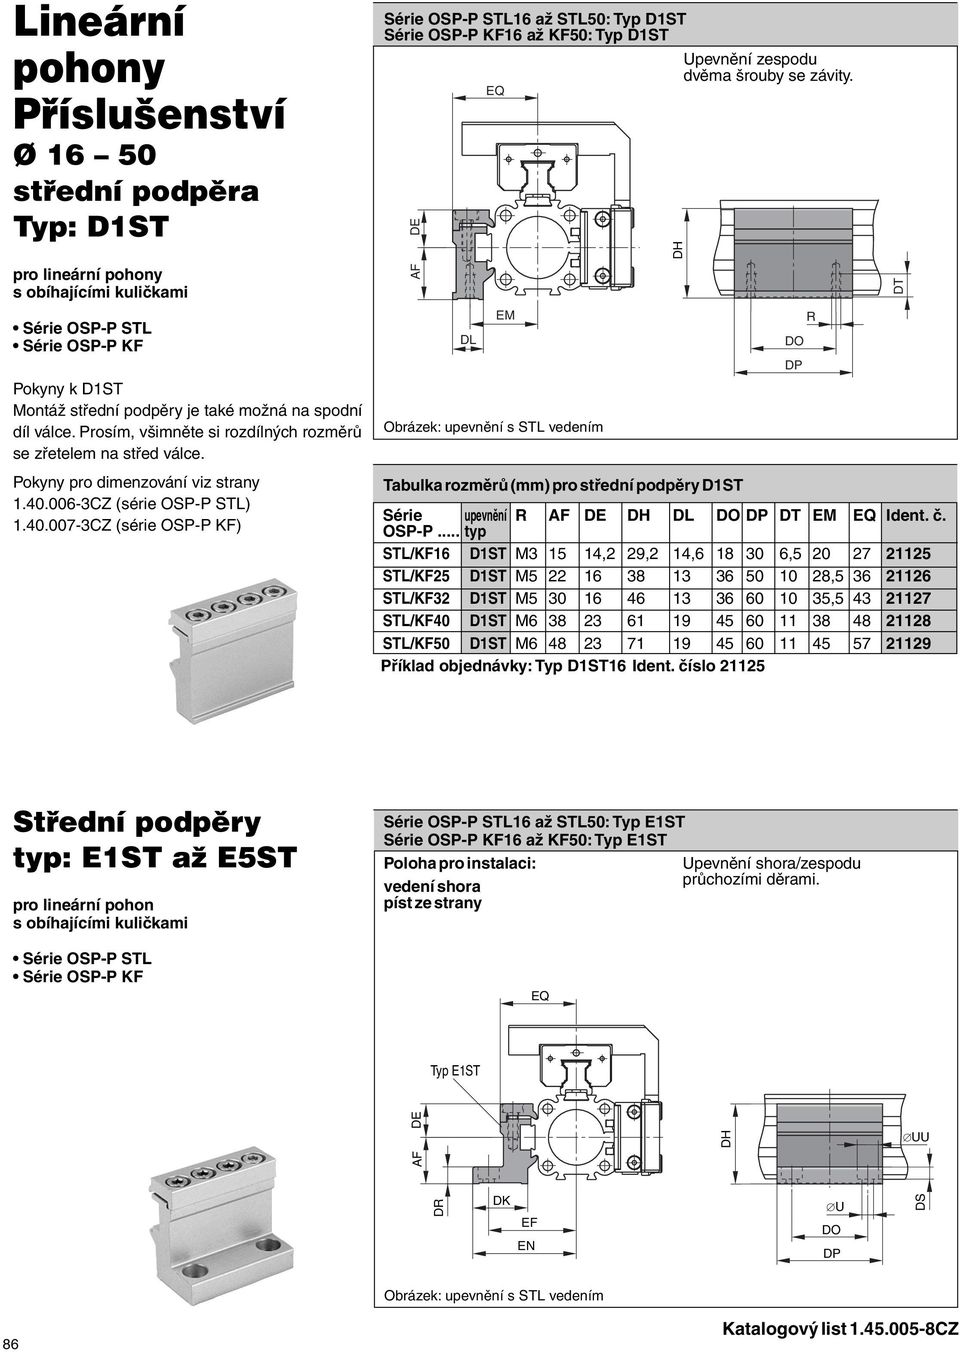 Série OSP-P STL16 až STL50: Typ D1ST Série OSP-P KF16 až KF50: Typ D1ST DE DL EQ EM Obrázek: upevnění s STL vedením DH Upevnění zespodu dvěma šrouby se závity.